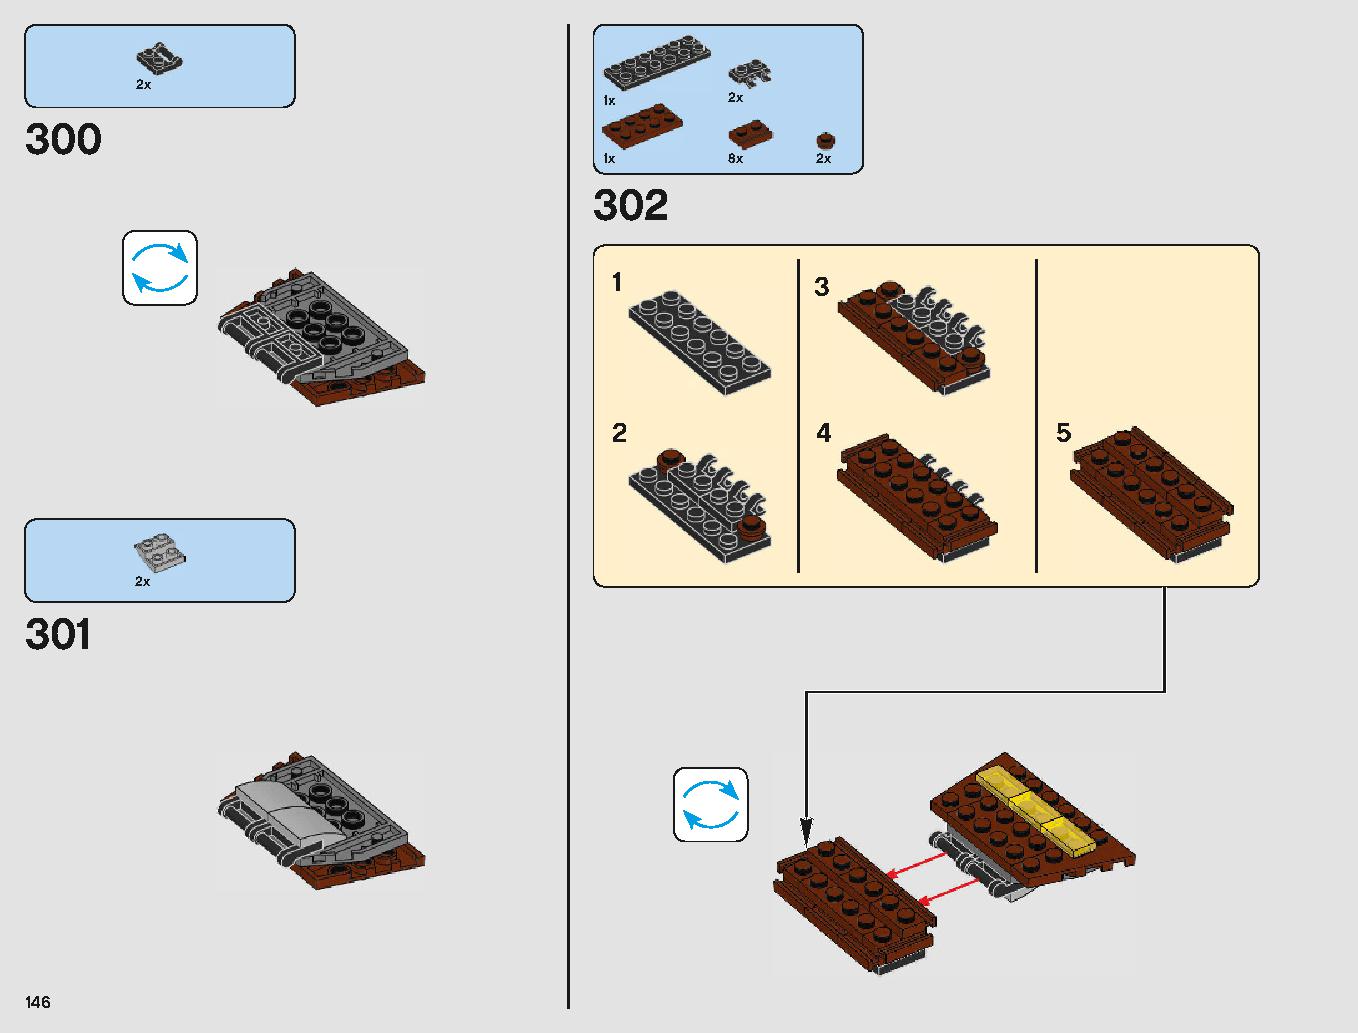 サンドクローラー 75220 レゴの商品情報 レゴの説明書・組立方法 146 page